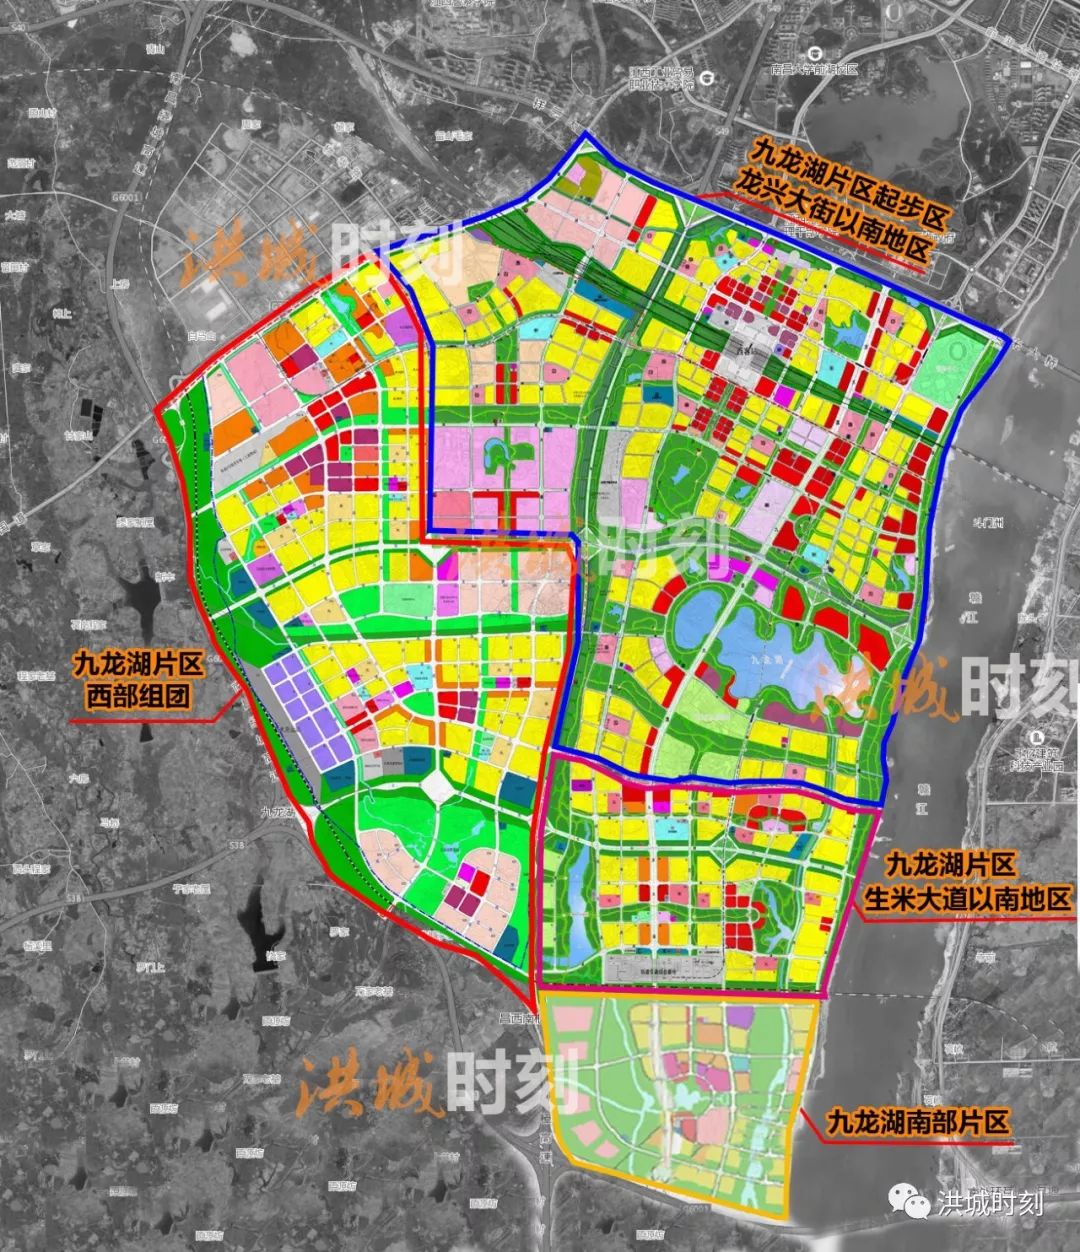 九龙湖新城未来城市想象在哪里这里或将解锁发展新姿势